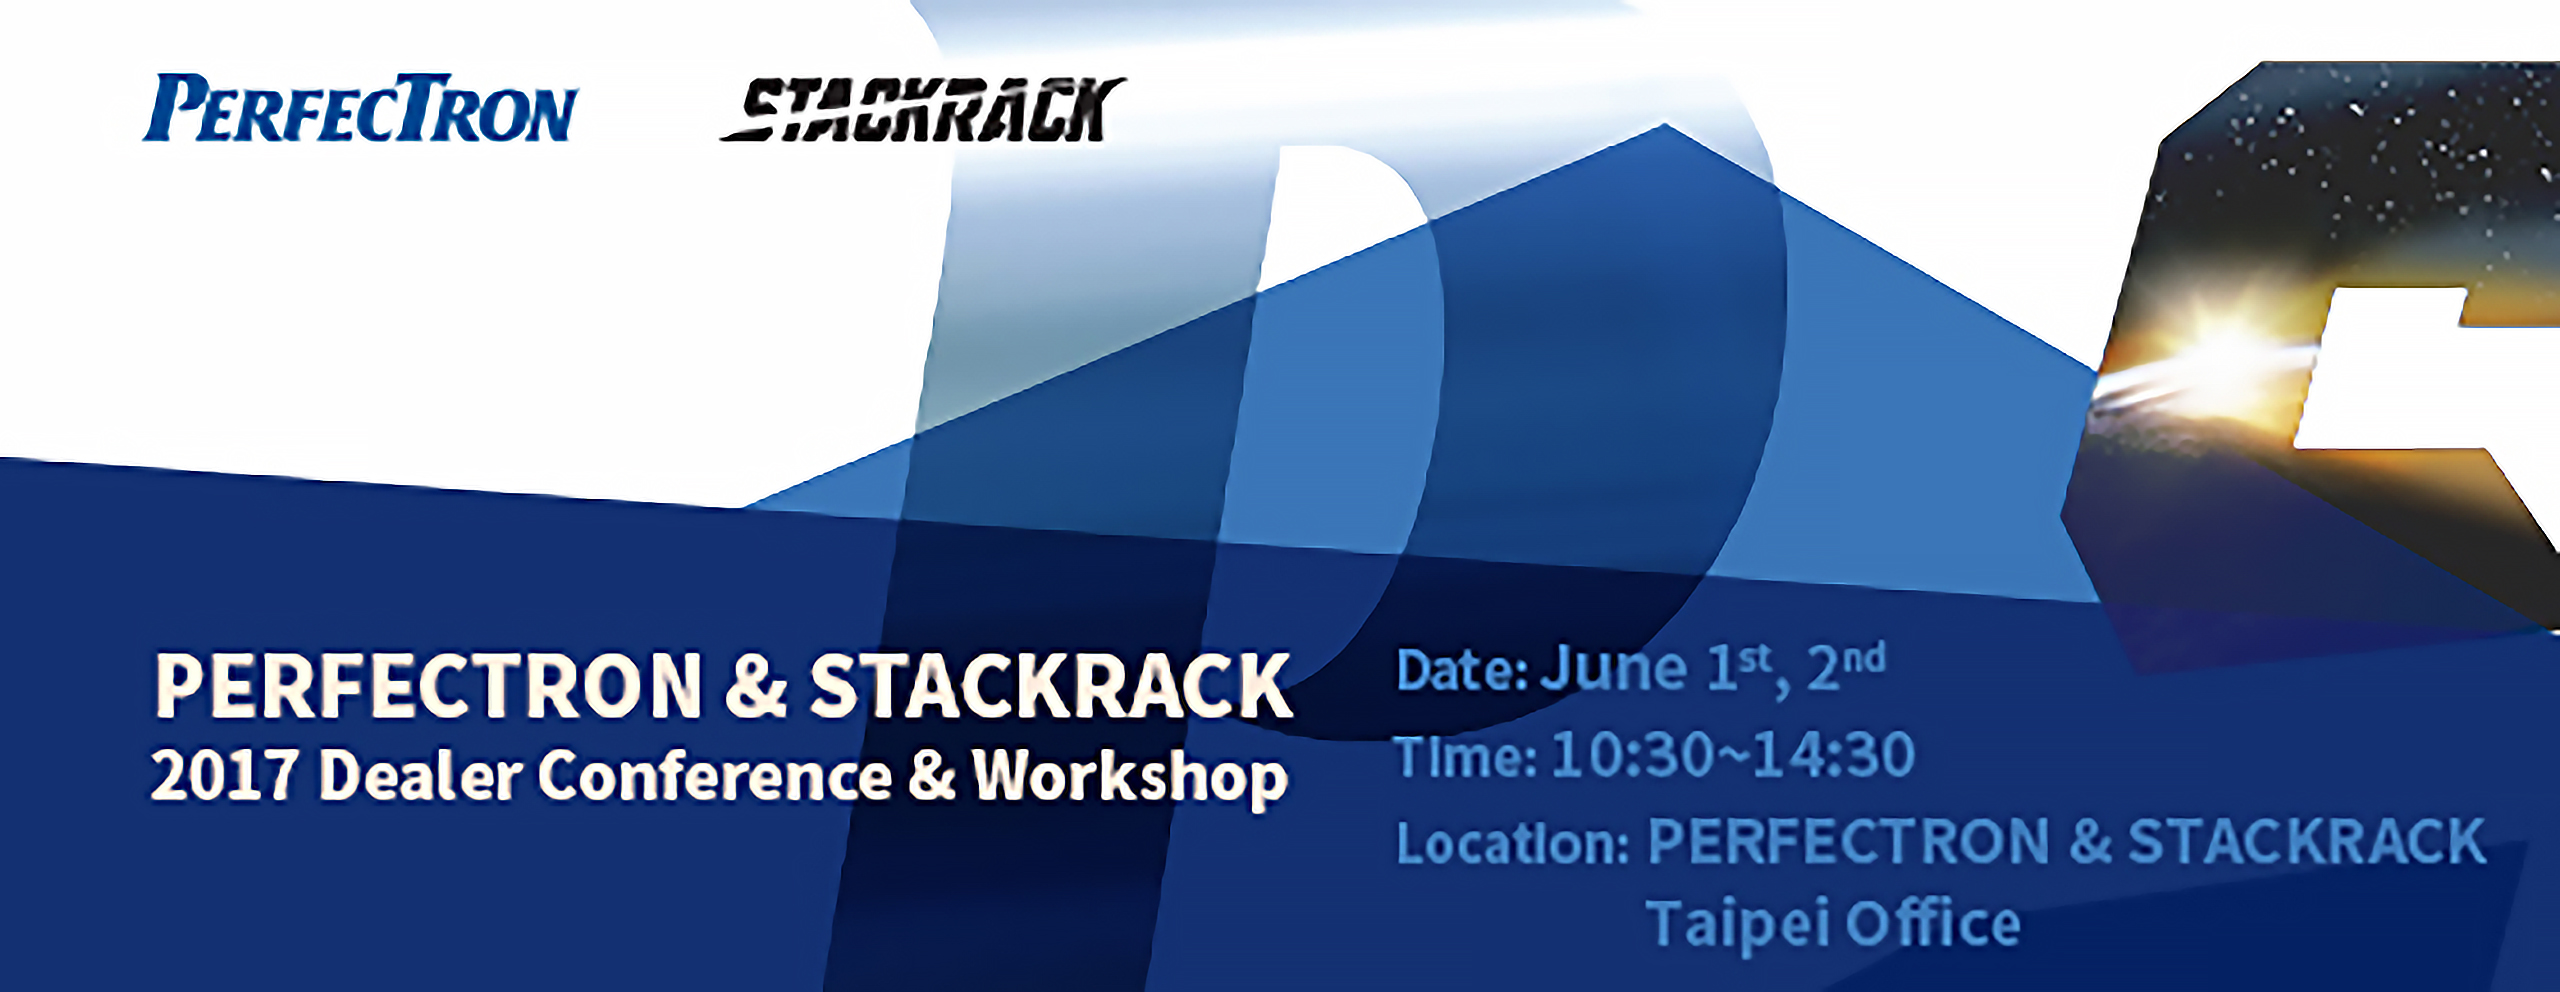 PERFECTRON & STACKRACK 2017 Dealer Conference & Workshop